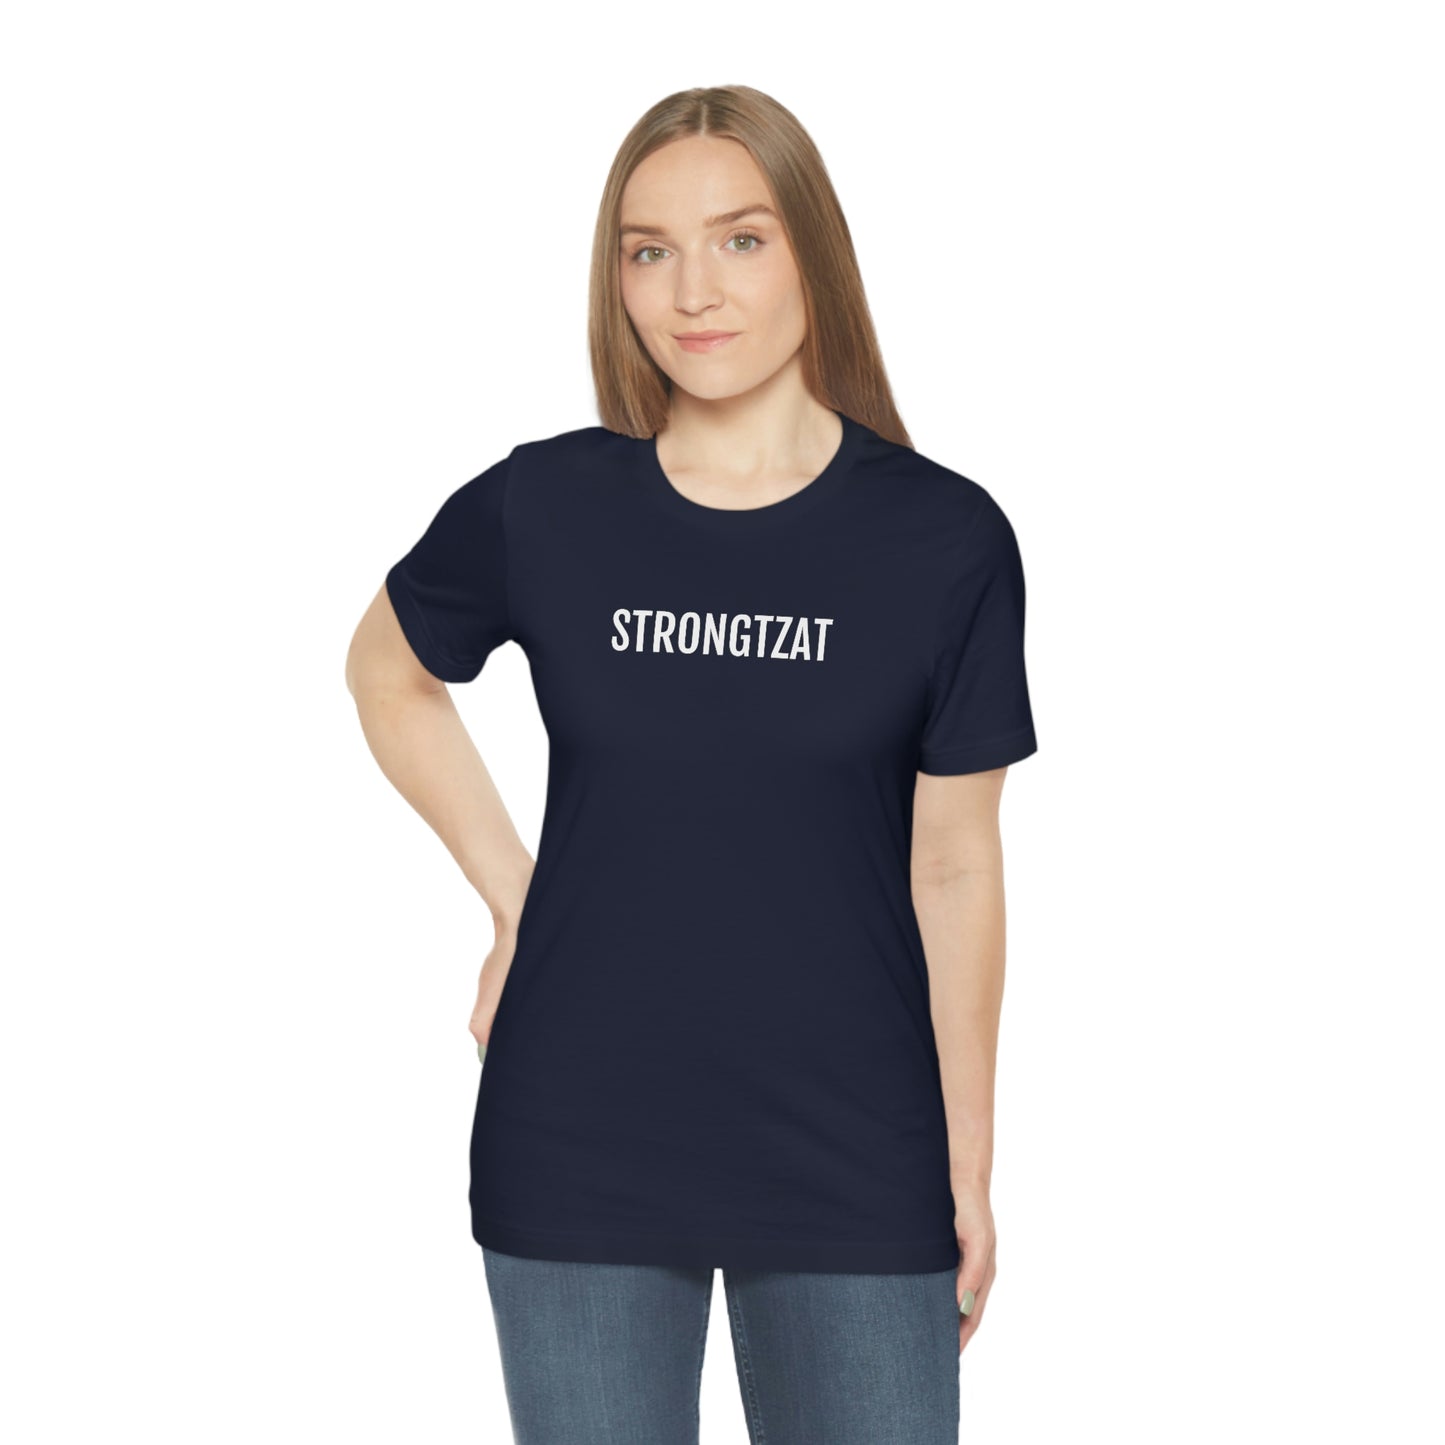 Strongtzat | Unisex T-Shirt uit Oost-Vlaanderen - marine blauw op vrouwelijk model